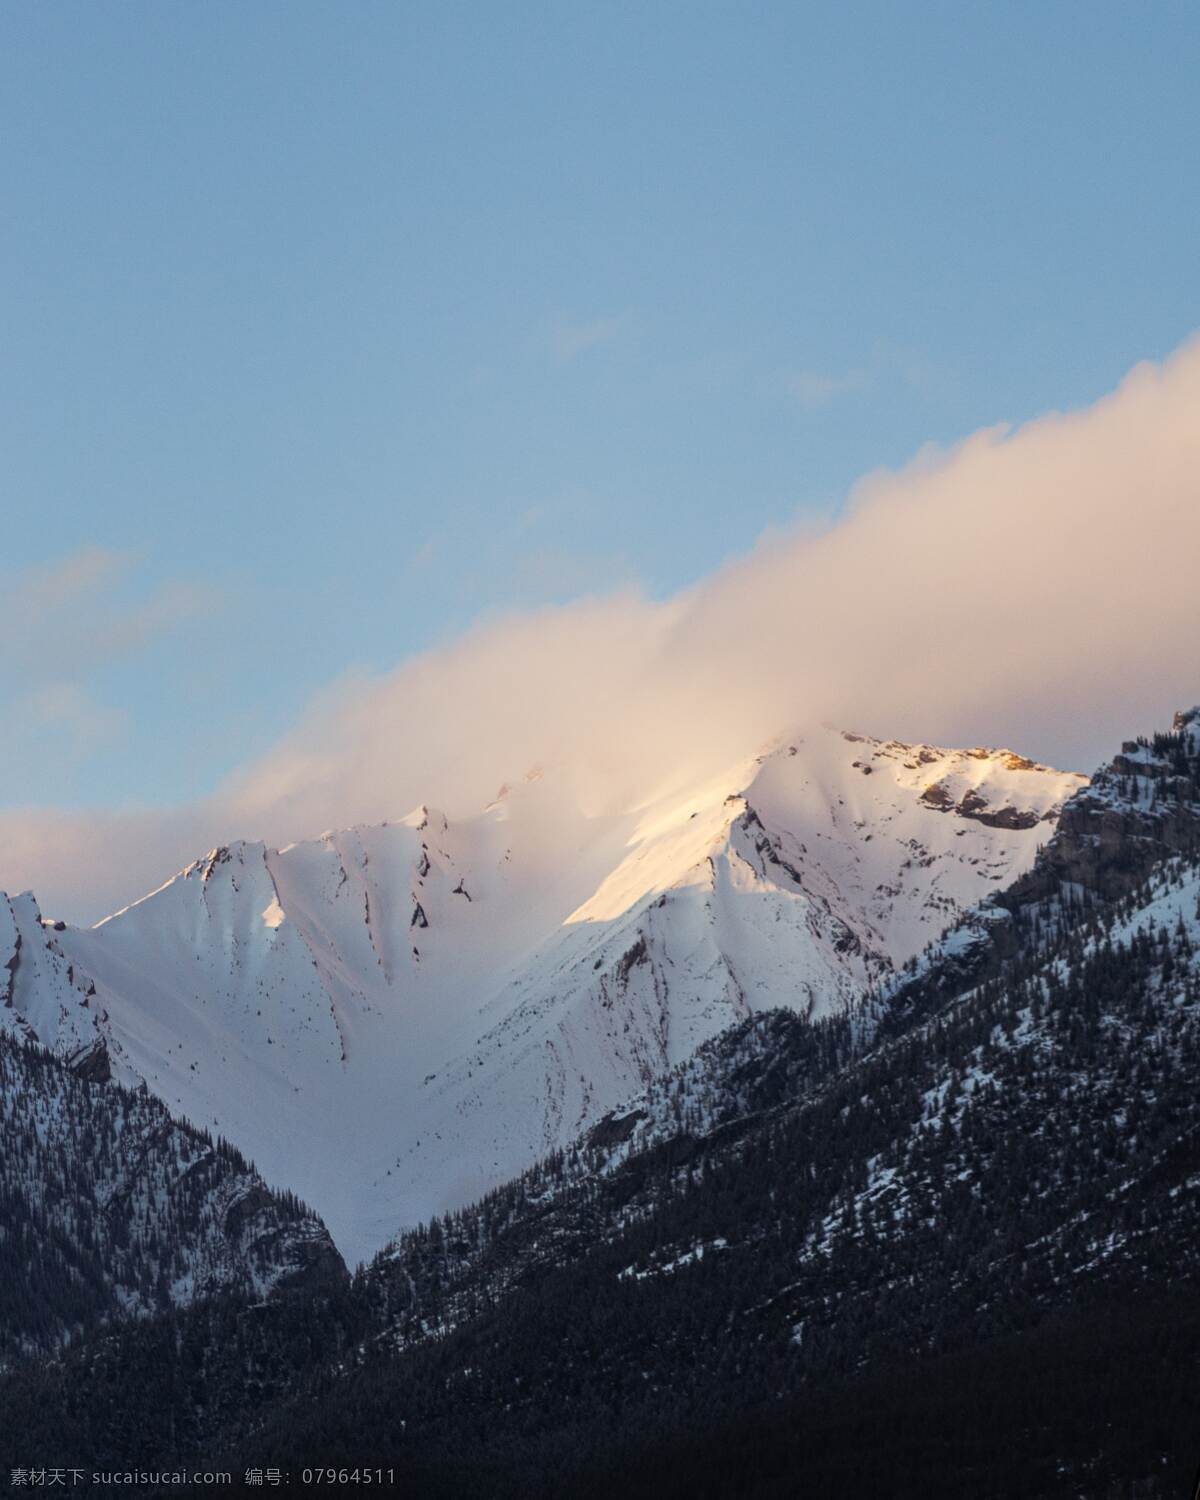 雪山图片 山脉 雪山 积雪 大雪 雪水 远山 山峰 云雾 天空 山色 云朵 景色 美景 风景 自然景观 自然风景